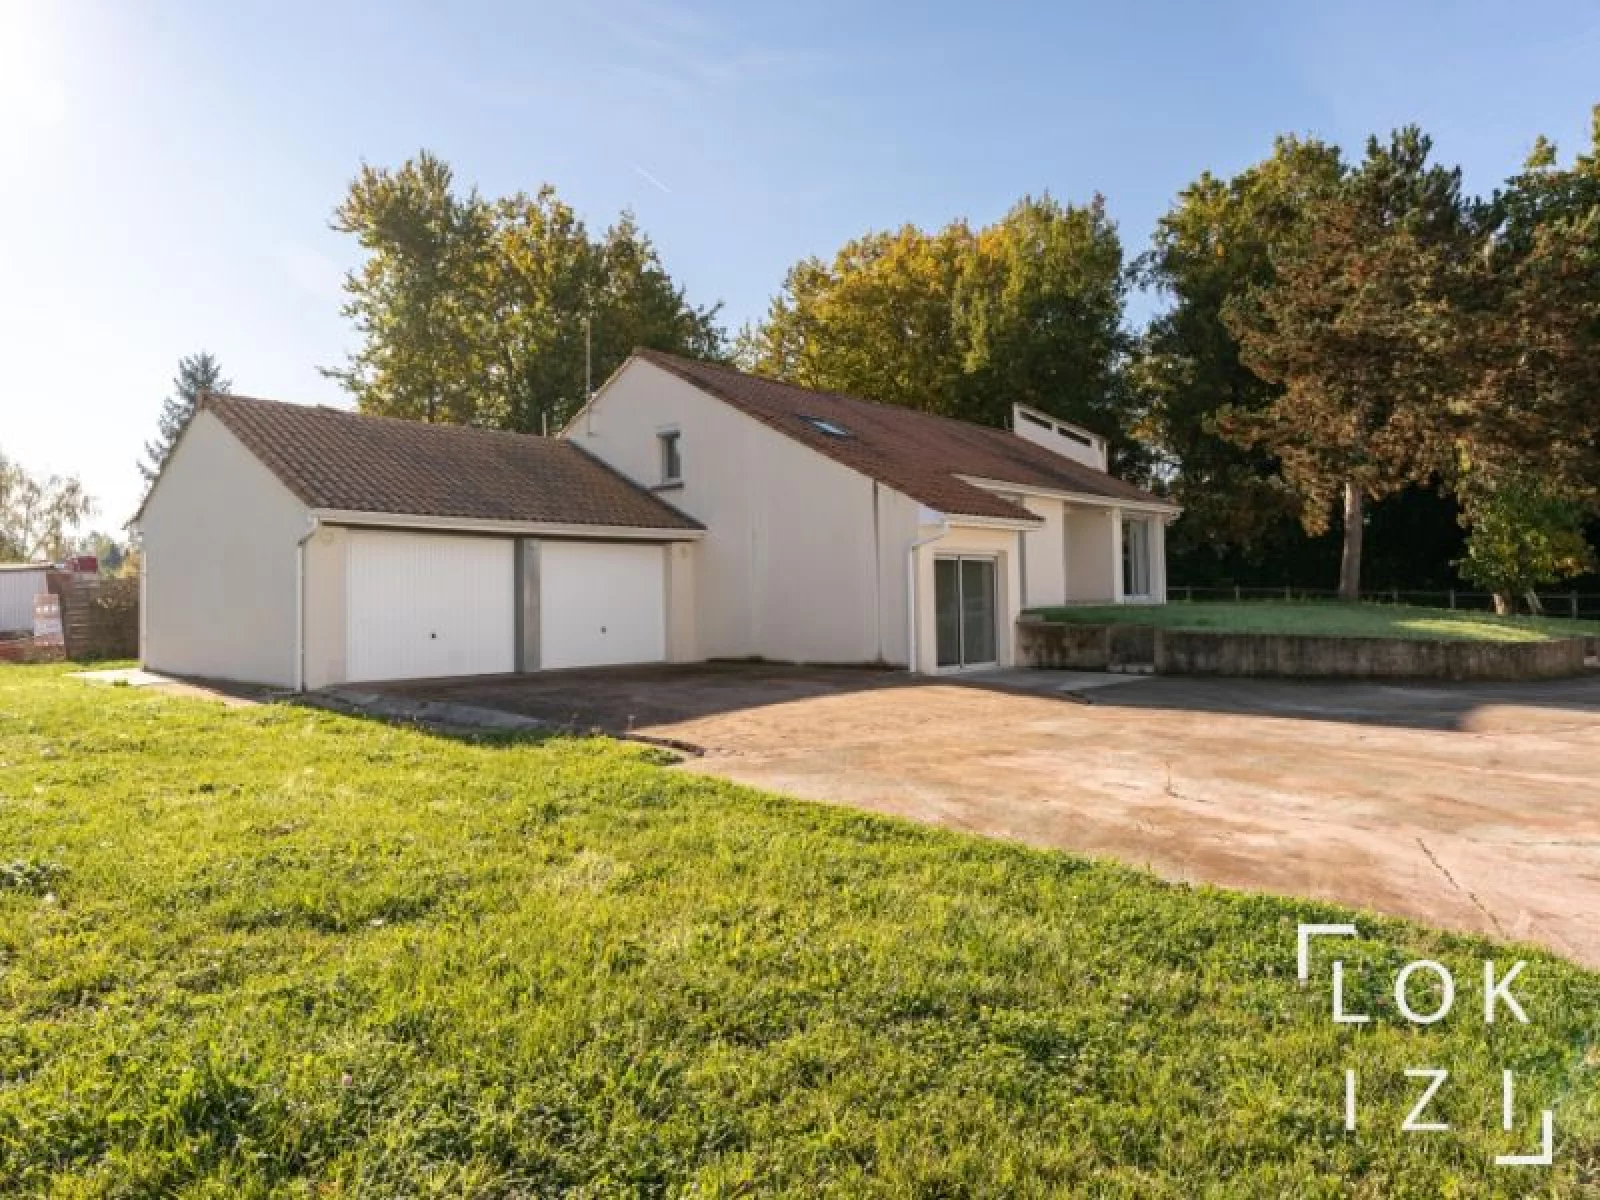 Location maison 131m avec jardin et garage (Bordeaux - Montussan)